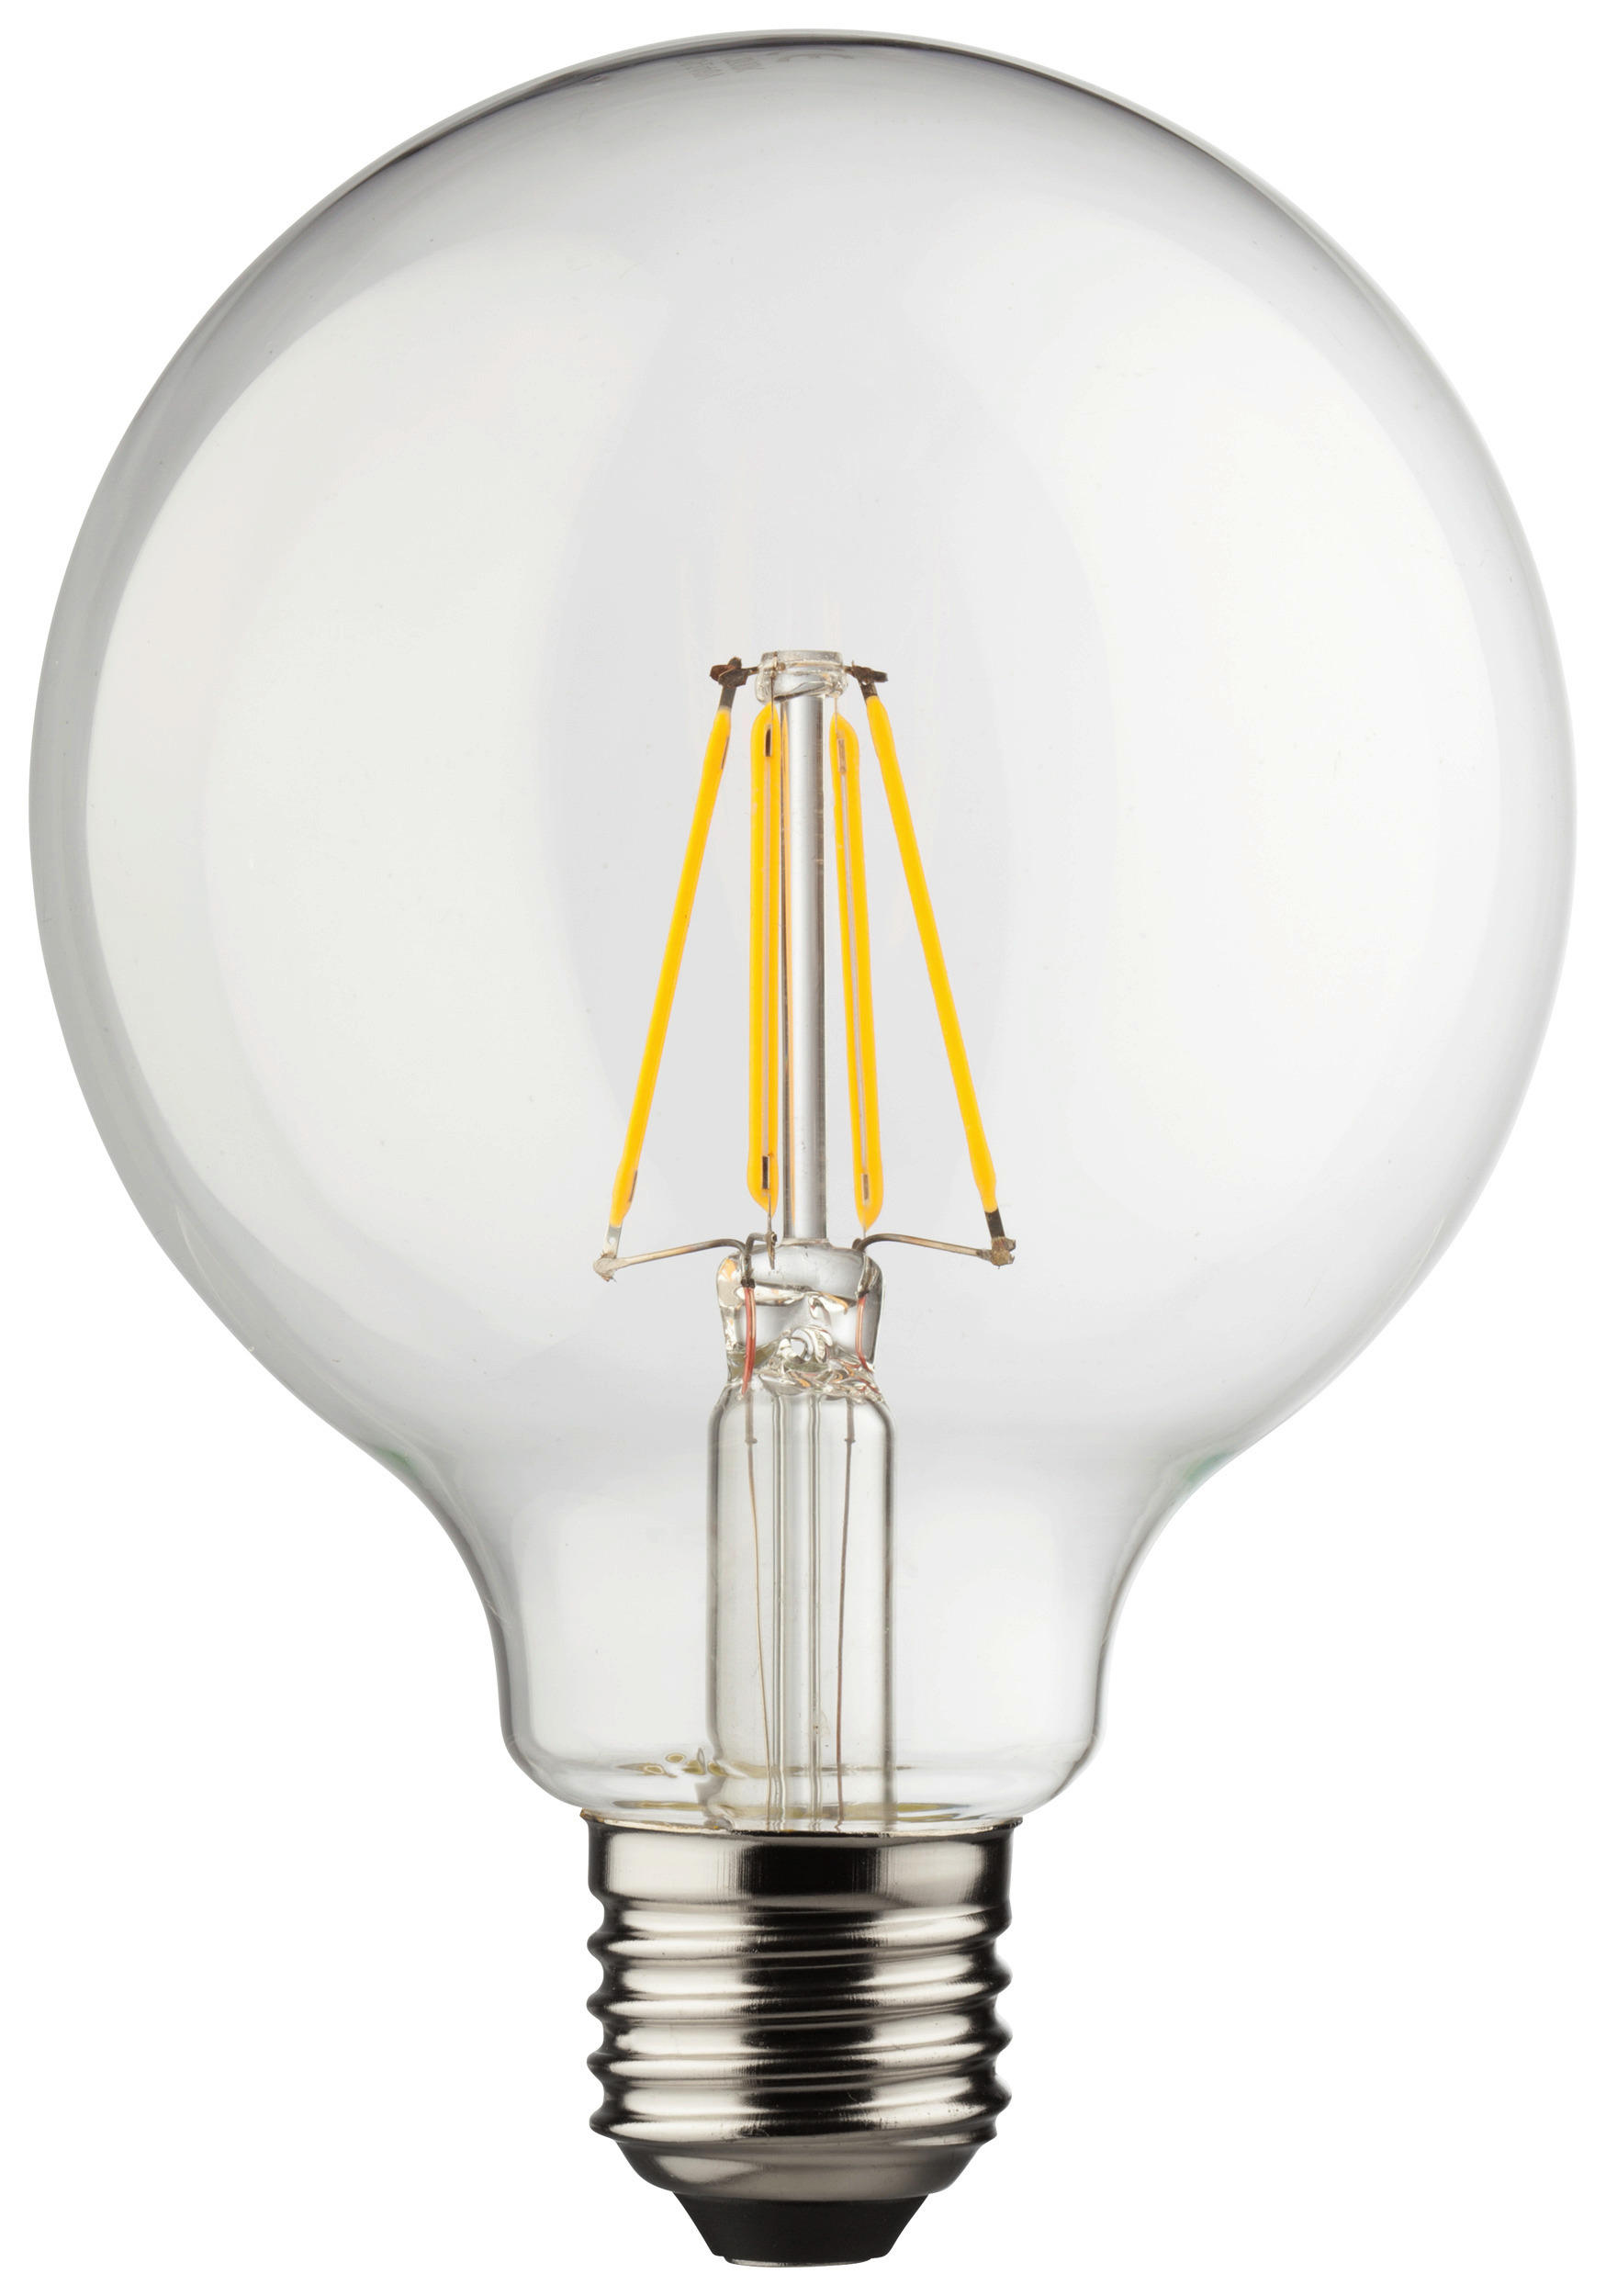 POCOline Globelampe 33419 E27 Globelampe_E27_Pocoline - klar (9,50/14,00cm)